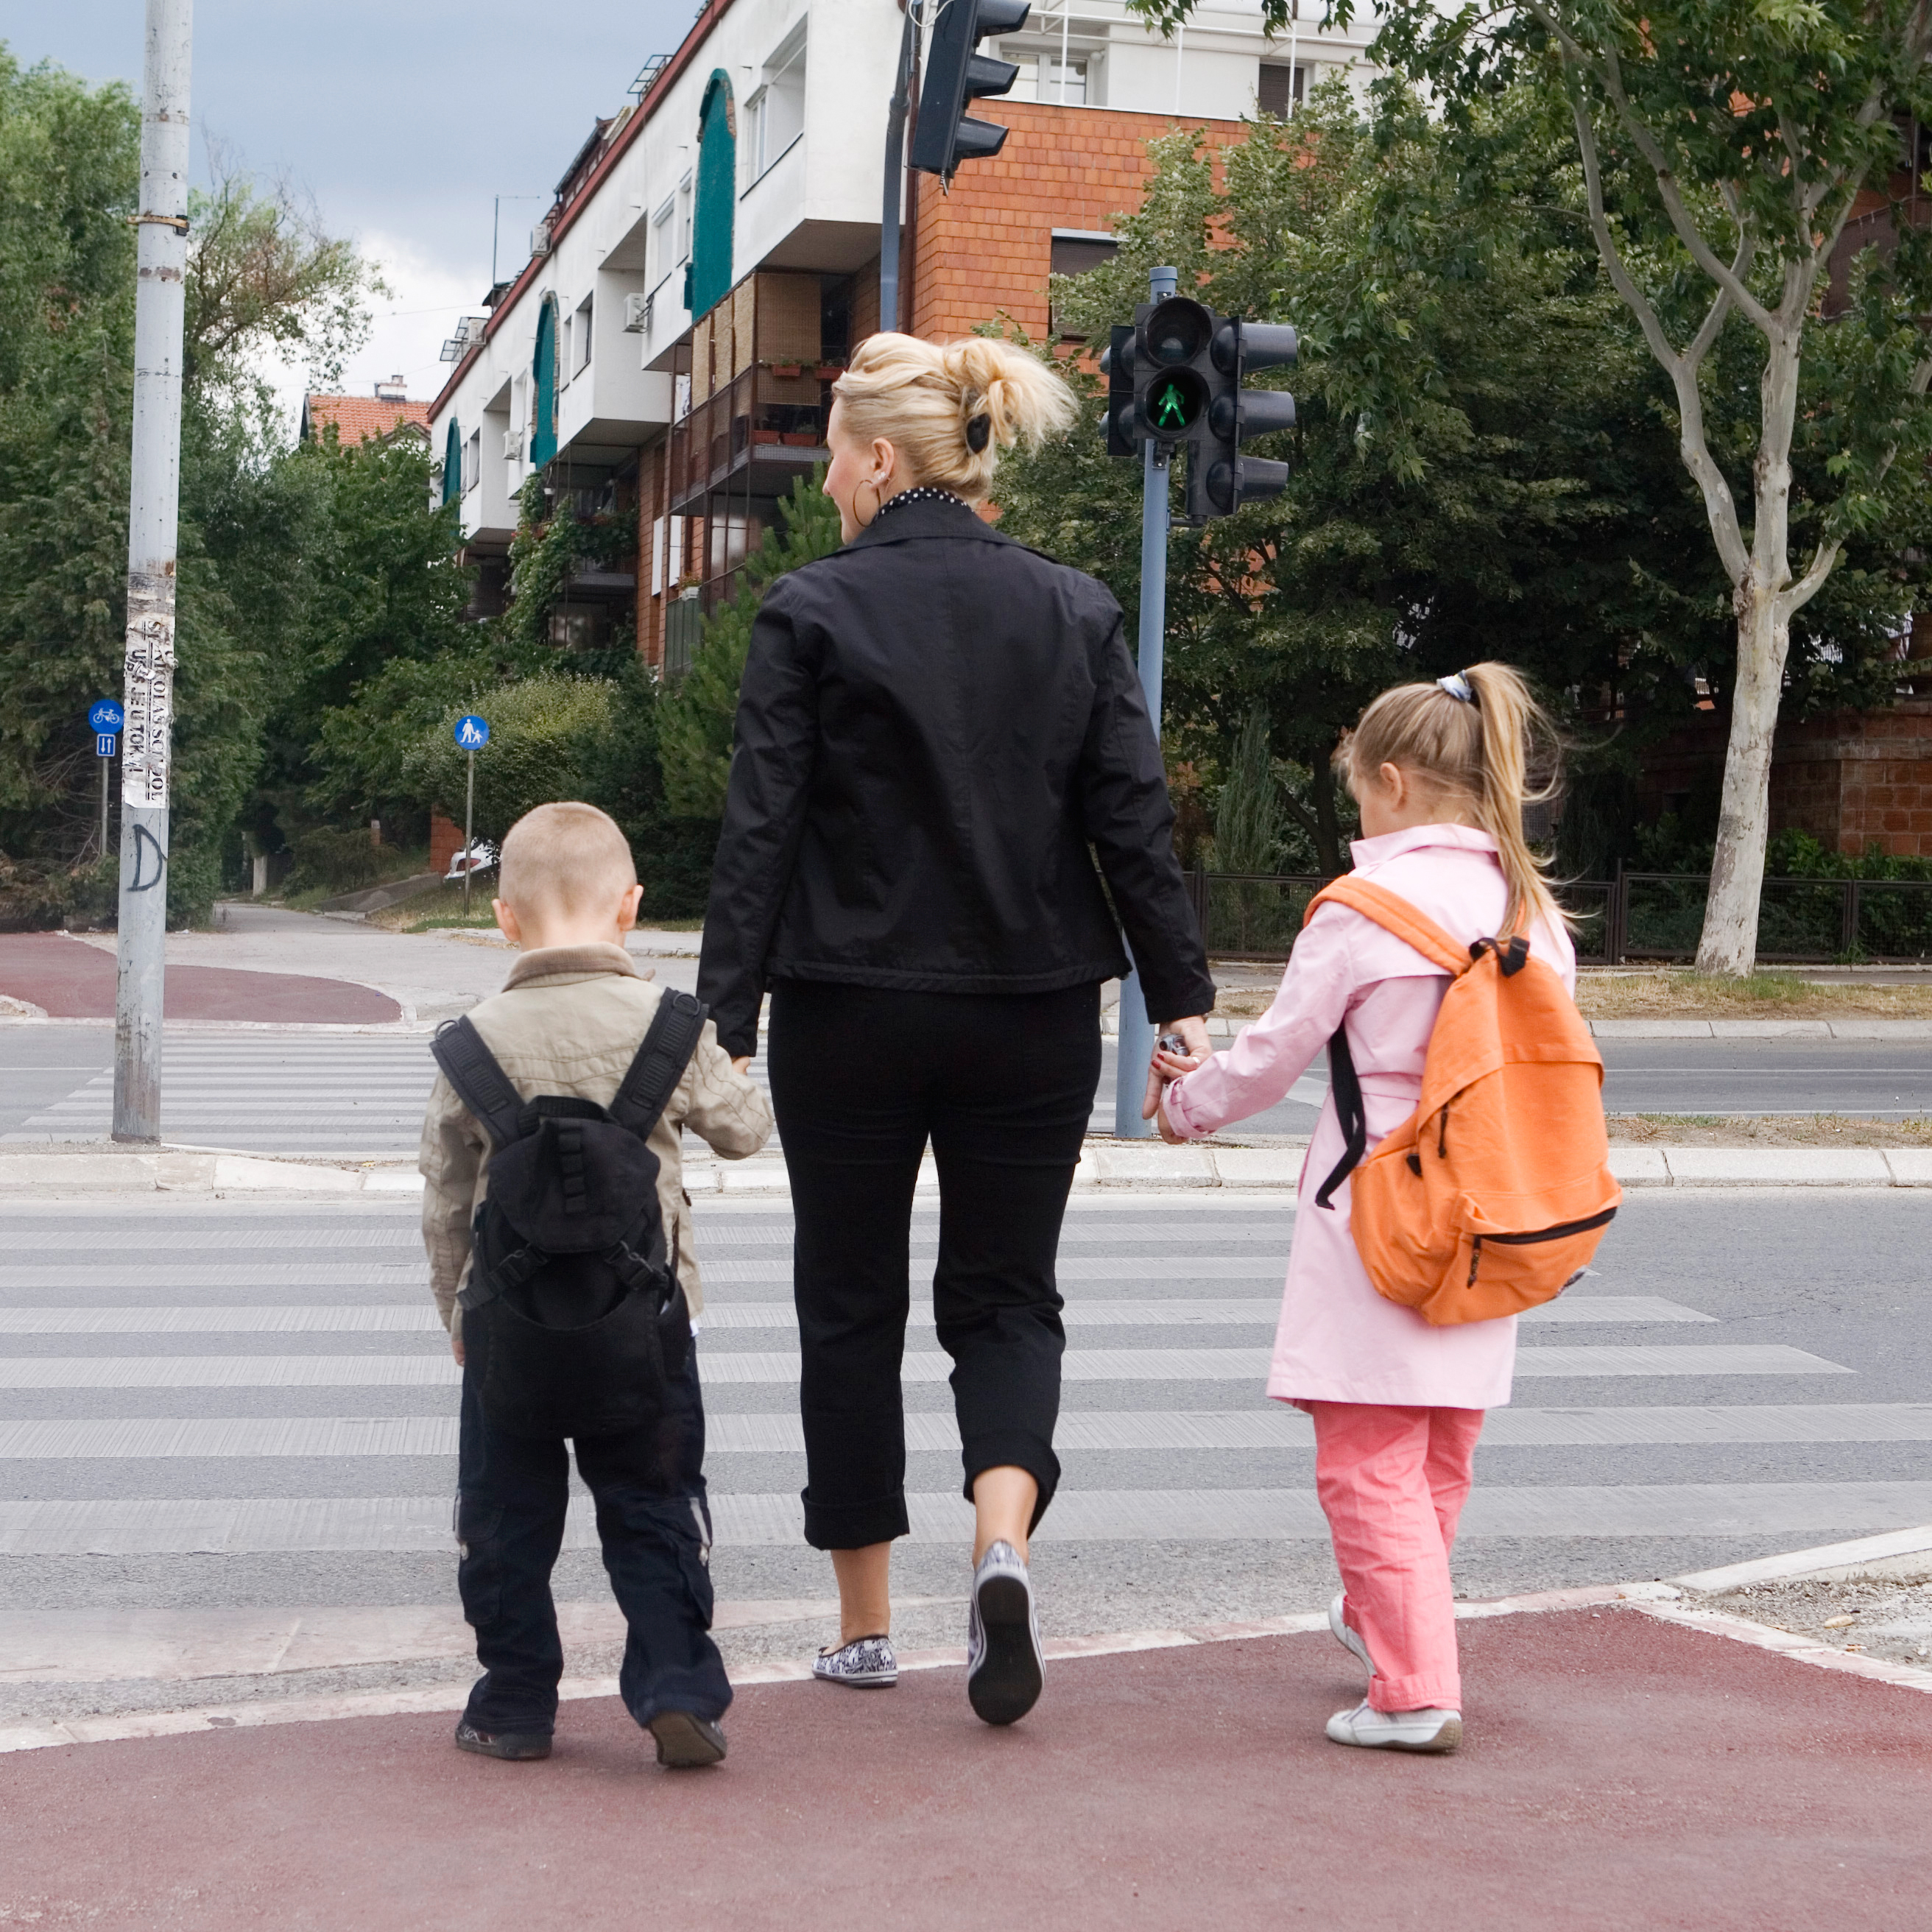 Pedestrian Safety  Children's Safety Network